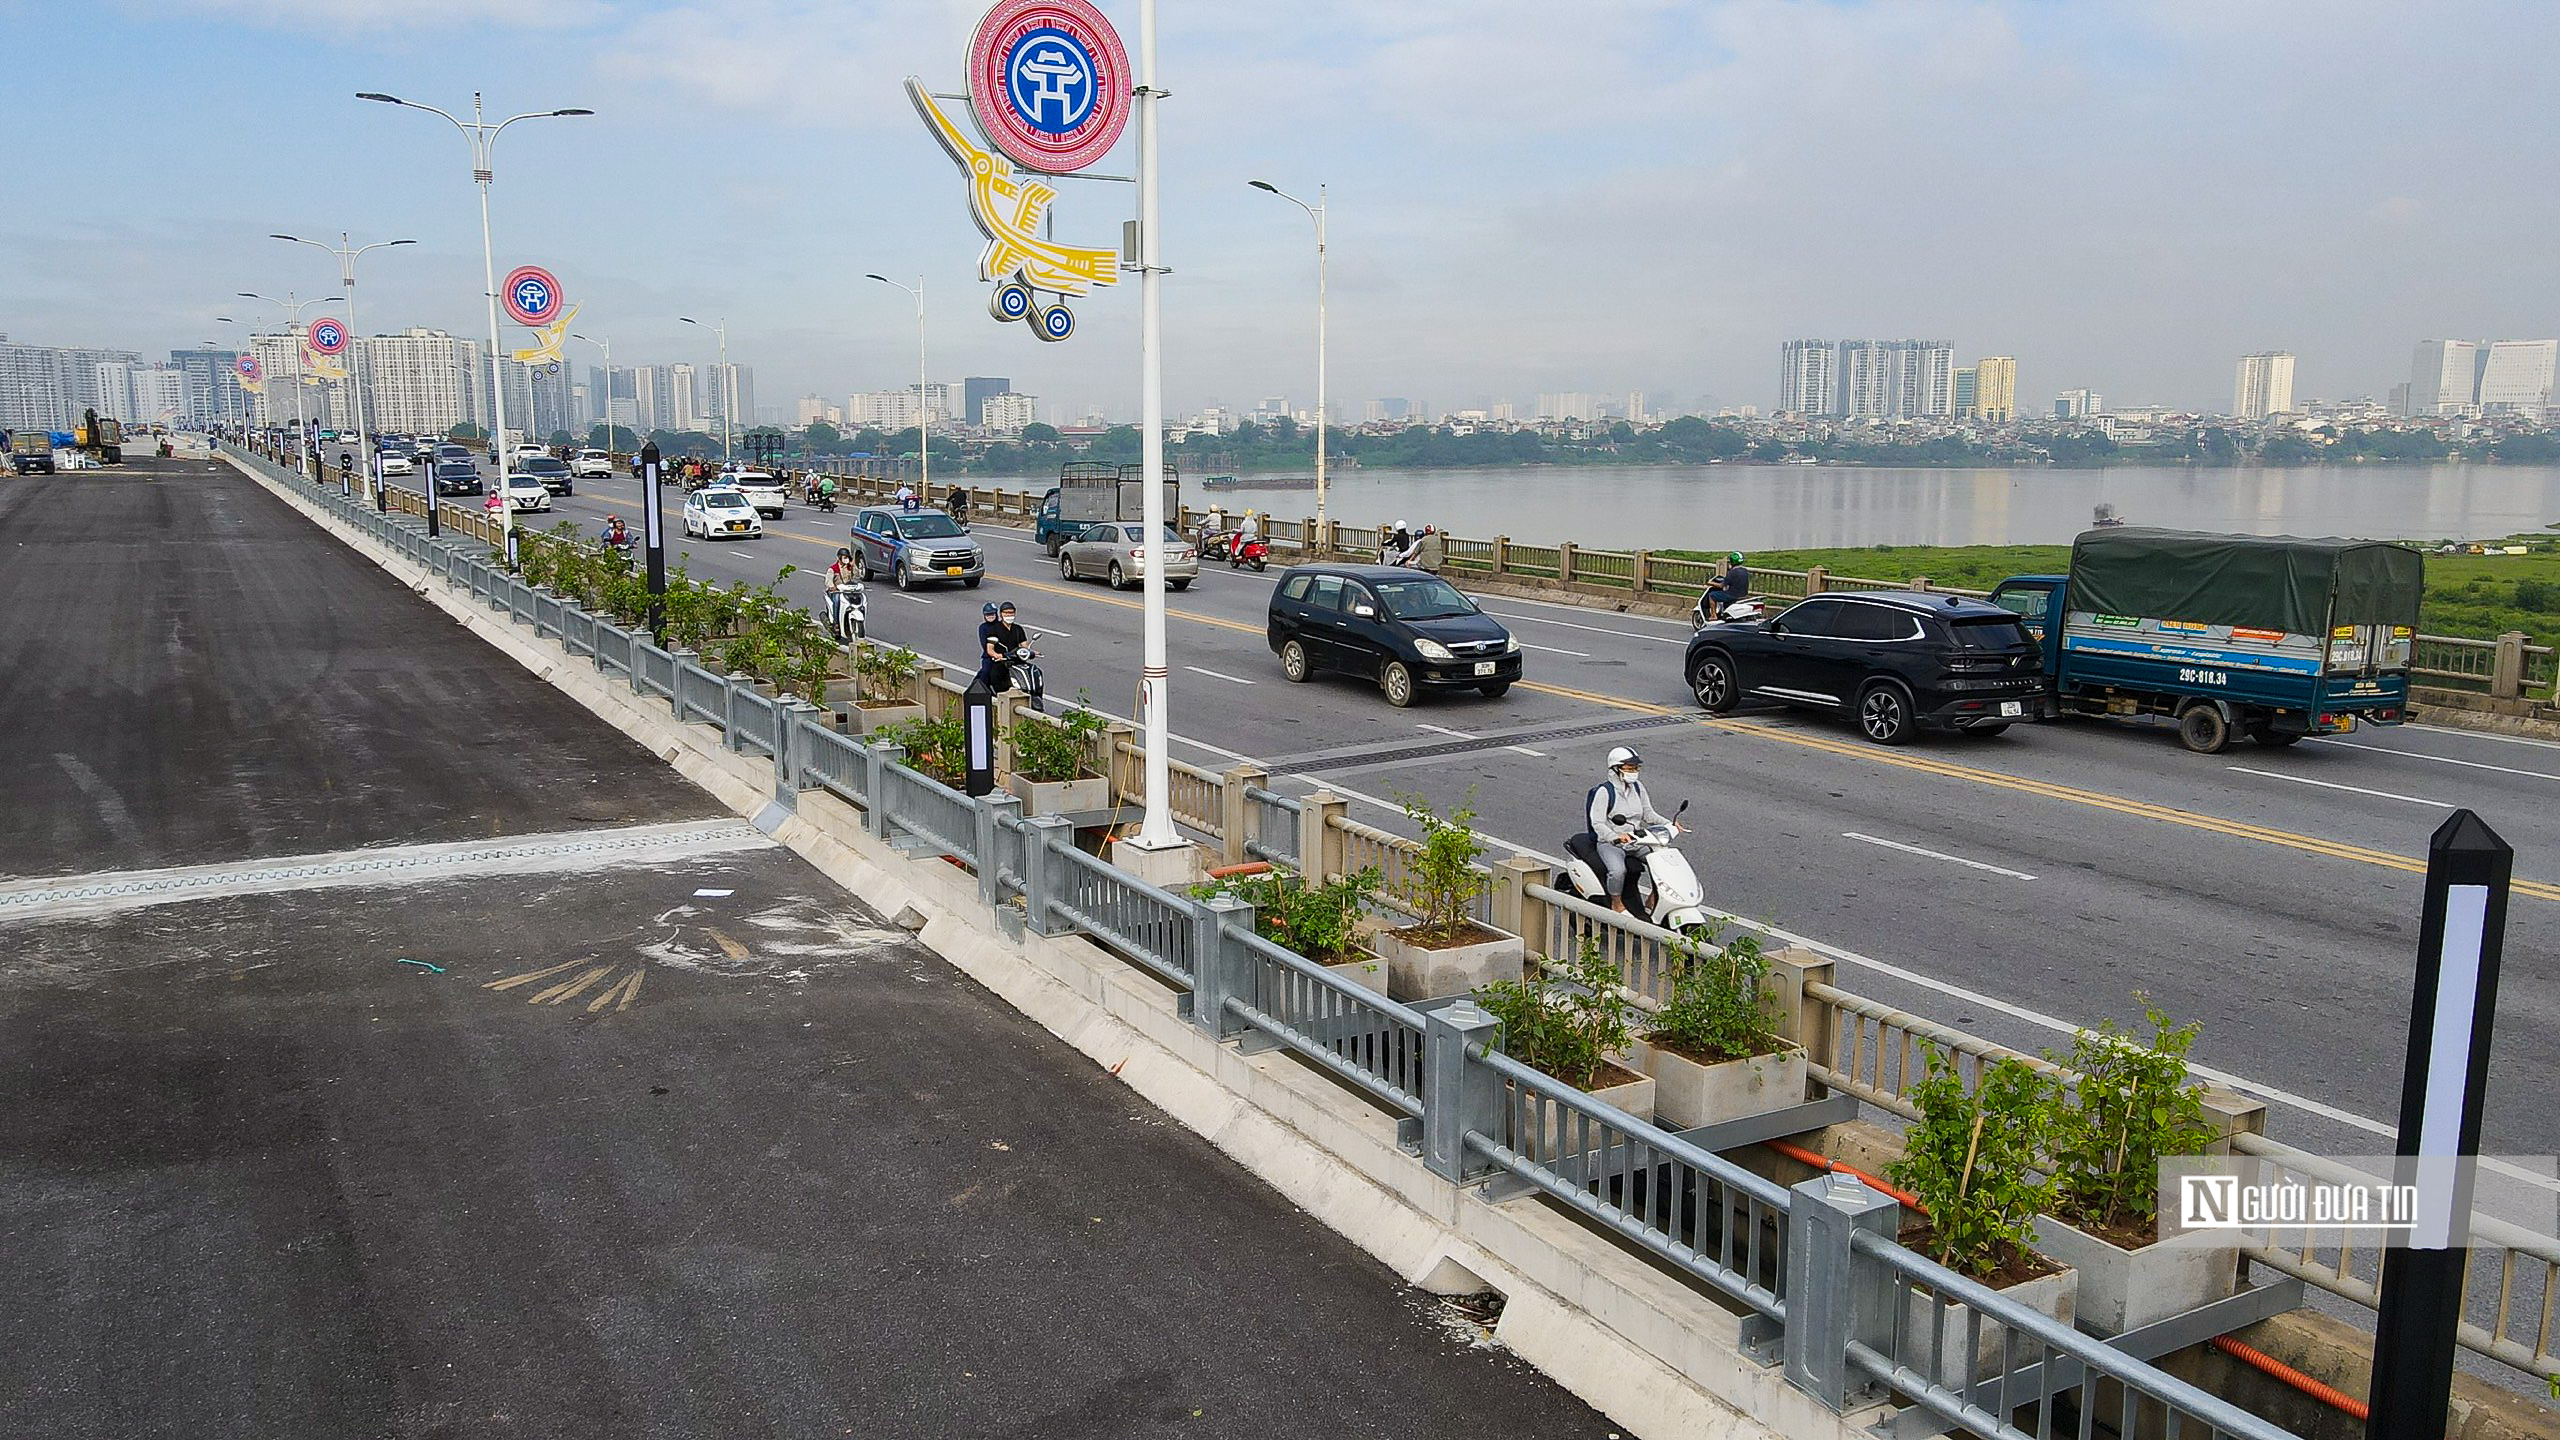 Sự kiện - Diện mạo cây cầu vượt sông Hồng 2.500 tỷ đồng sắp thông xe (Hình 8).